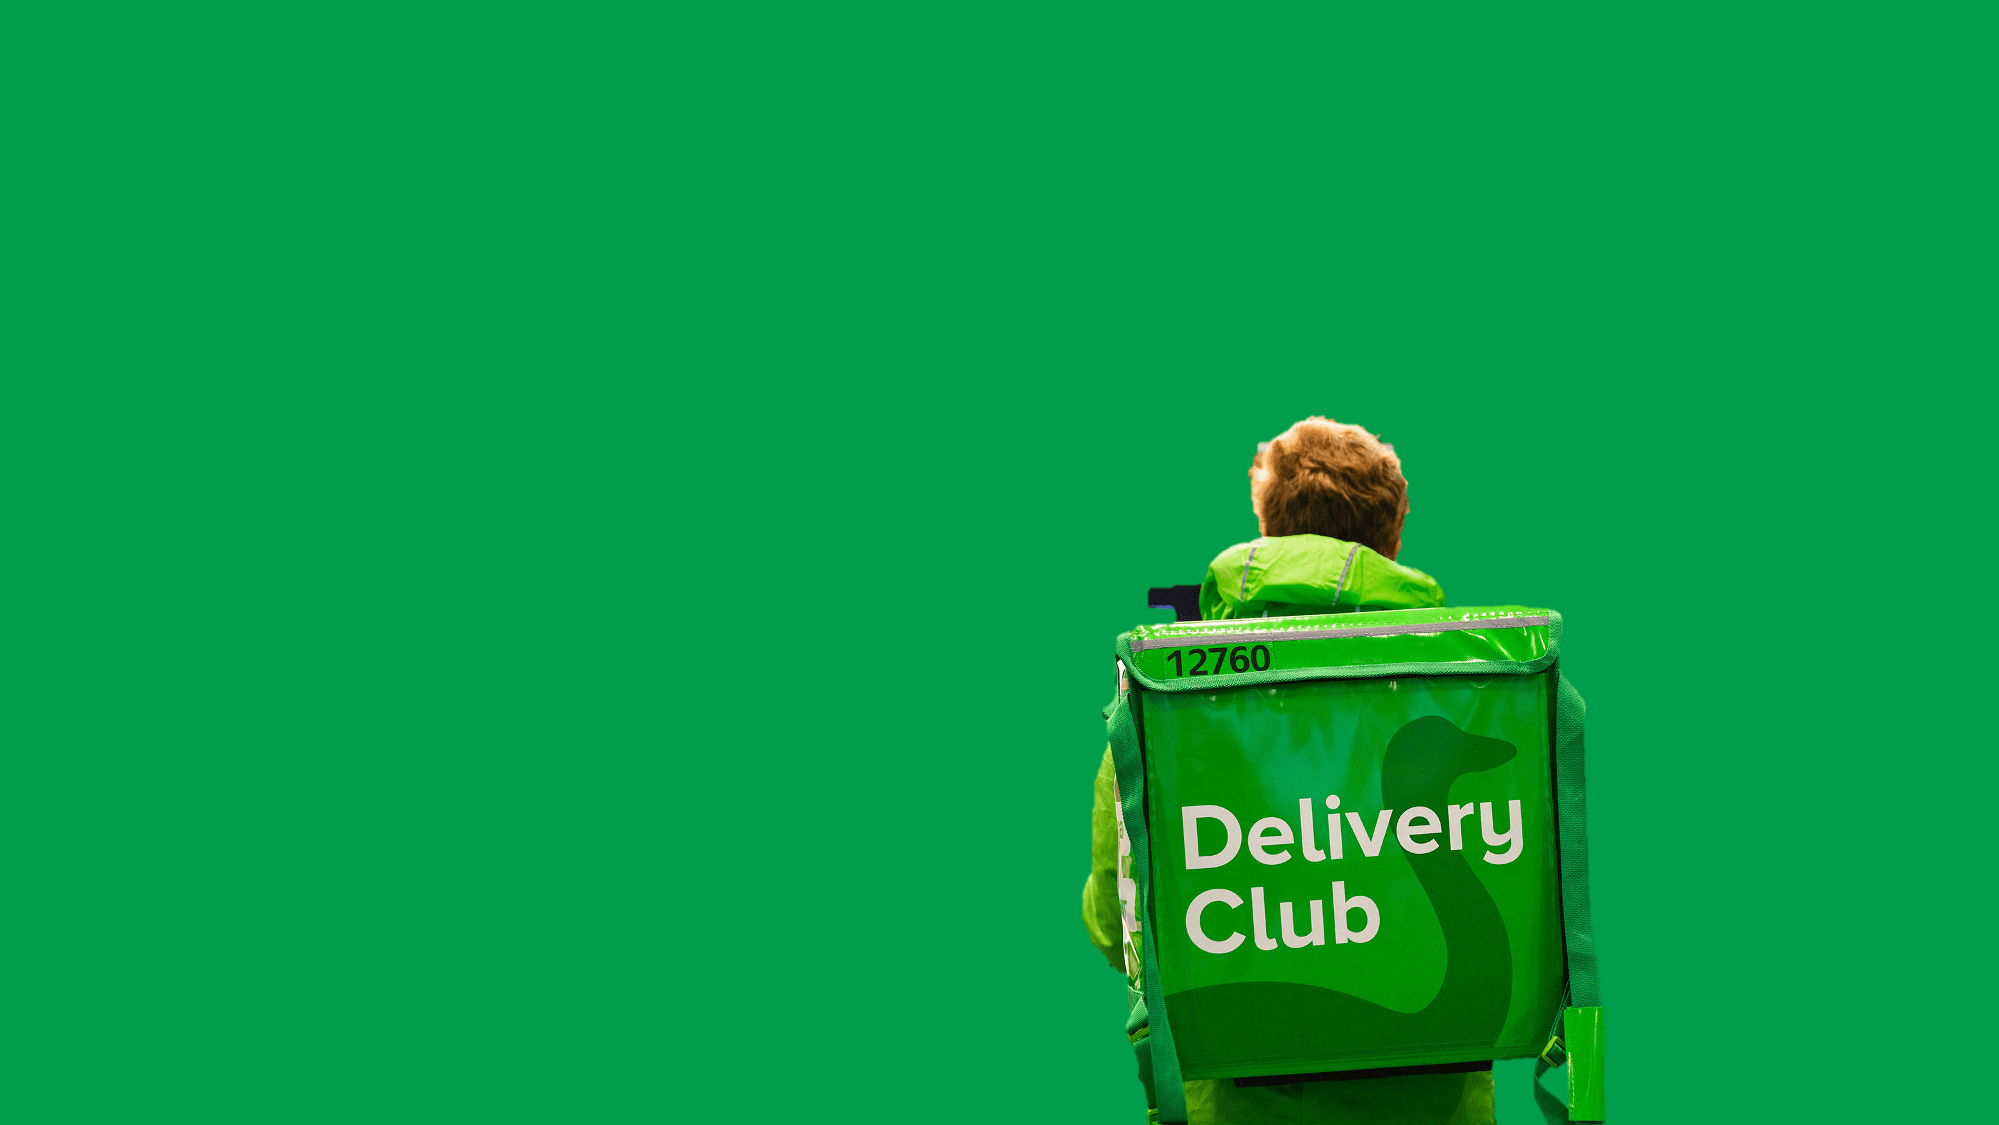 Работа доставка деливери. Delivery Club логотип. Сумка курьера Деливери. Delivery Club курьер. Доставщик в зелёной форме.